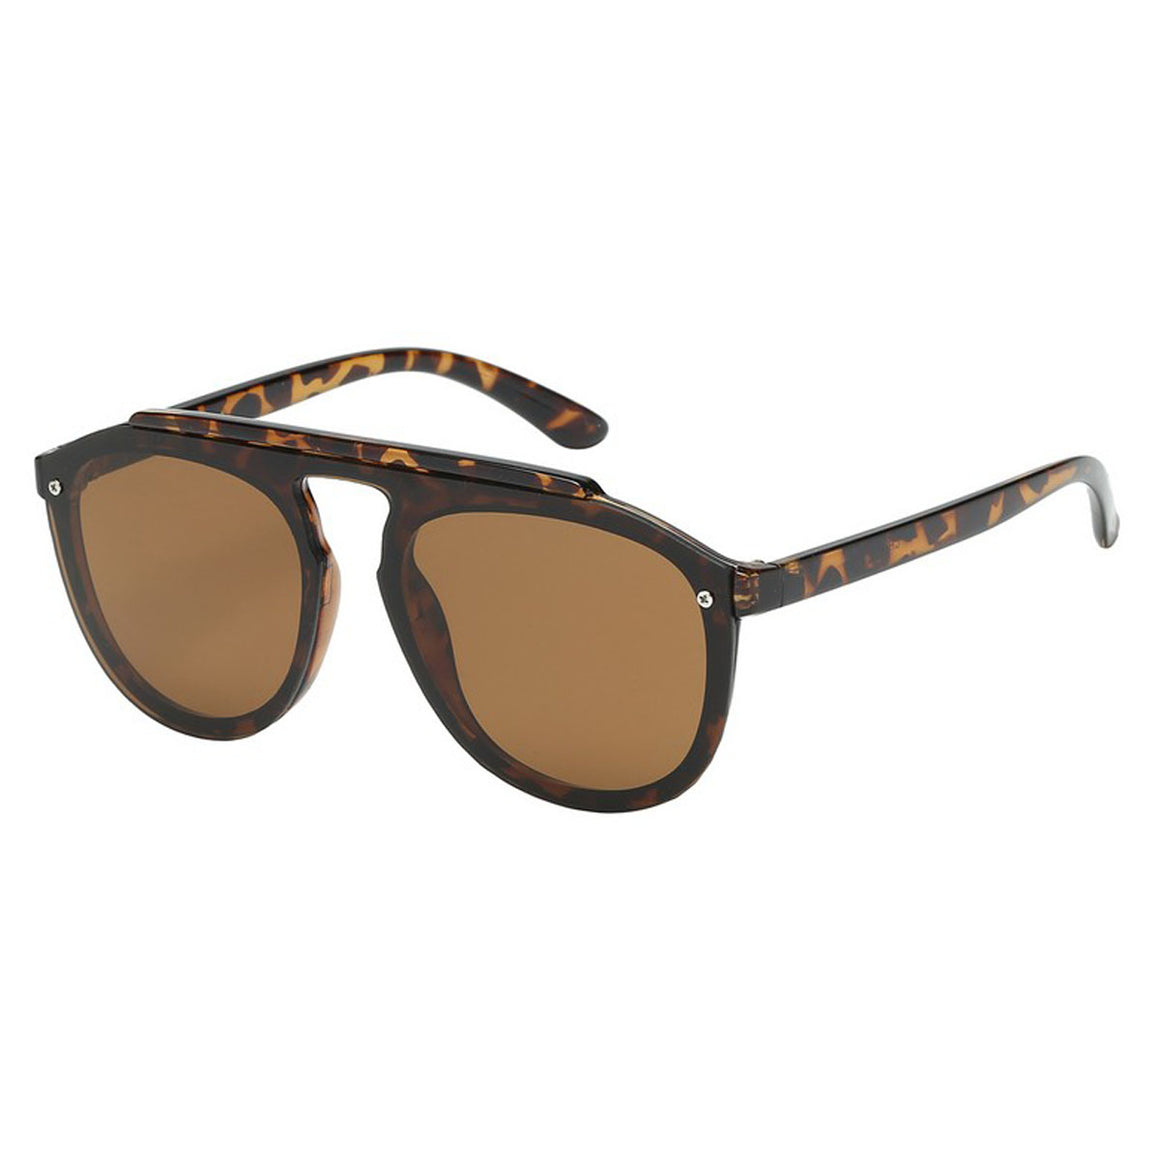 Designer Quality Sunglasses Wholesale # 8EYED11031 - wholesalesunglasses.net